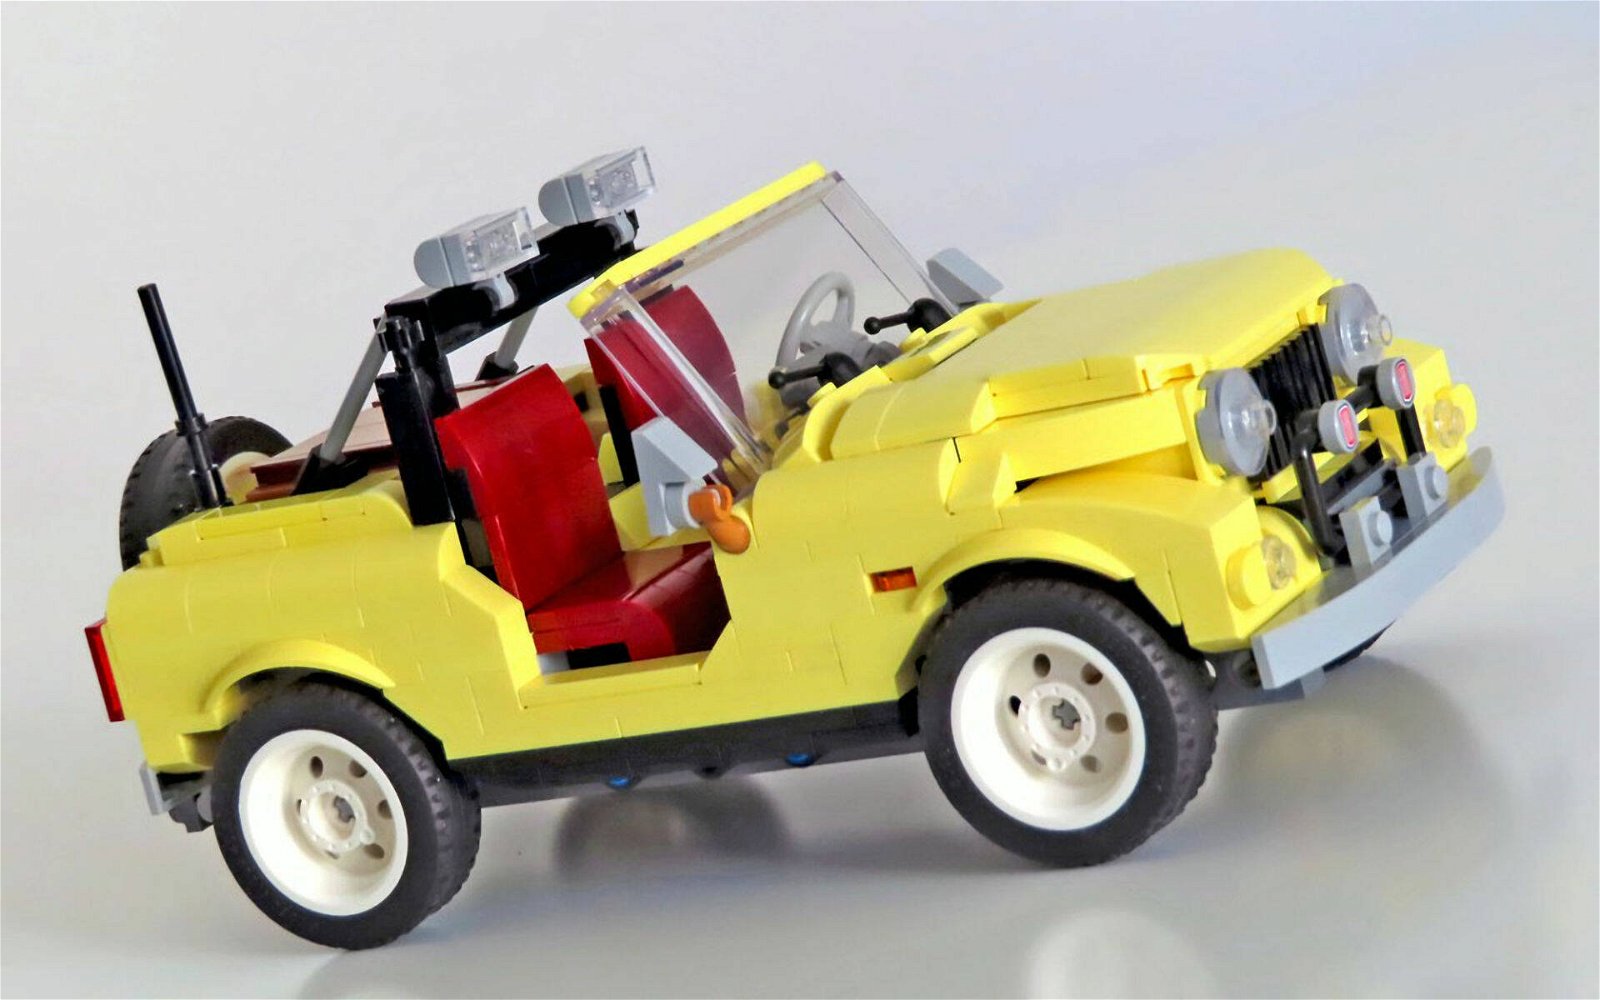 Immagine di LEGO MANIA. Costruiamo insieme la 10271 4x4 Offroader, versione alternativa del set "FIAT 500"